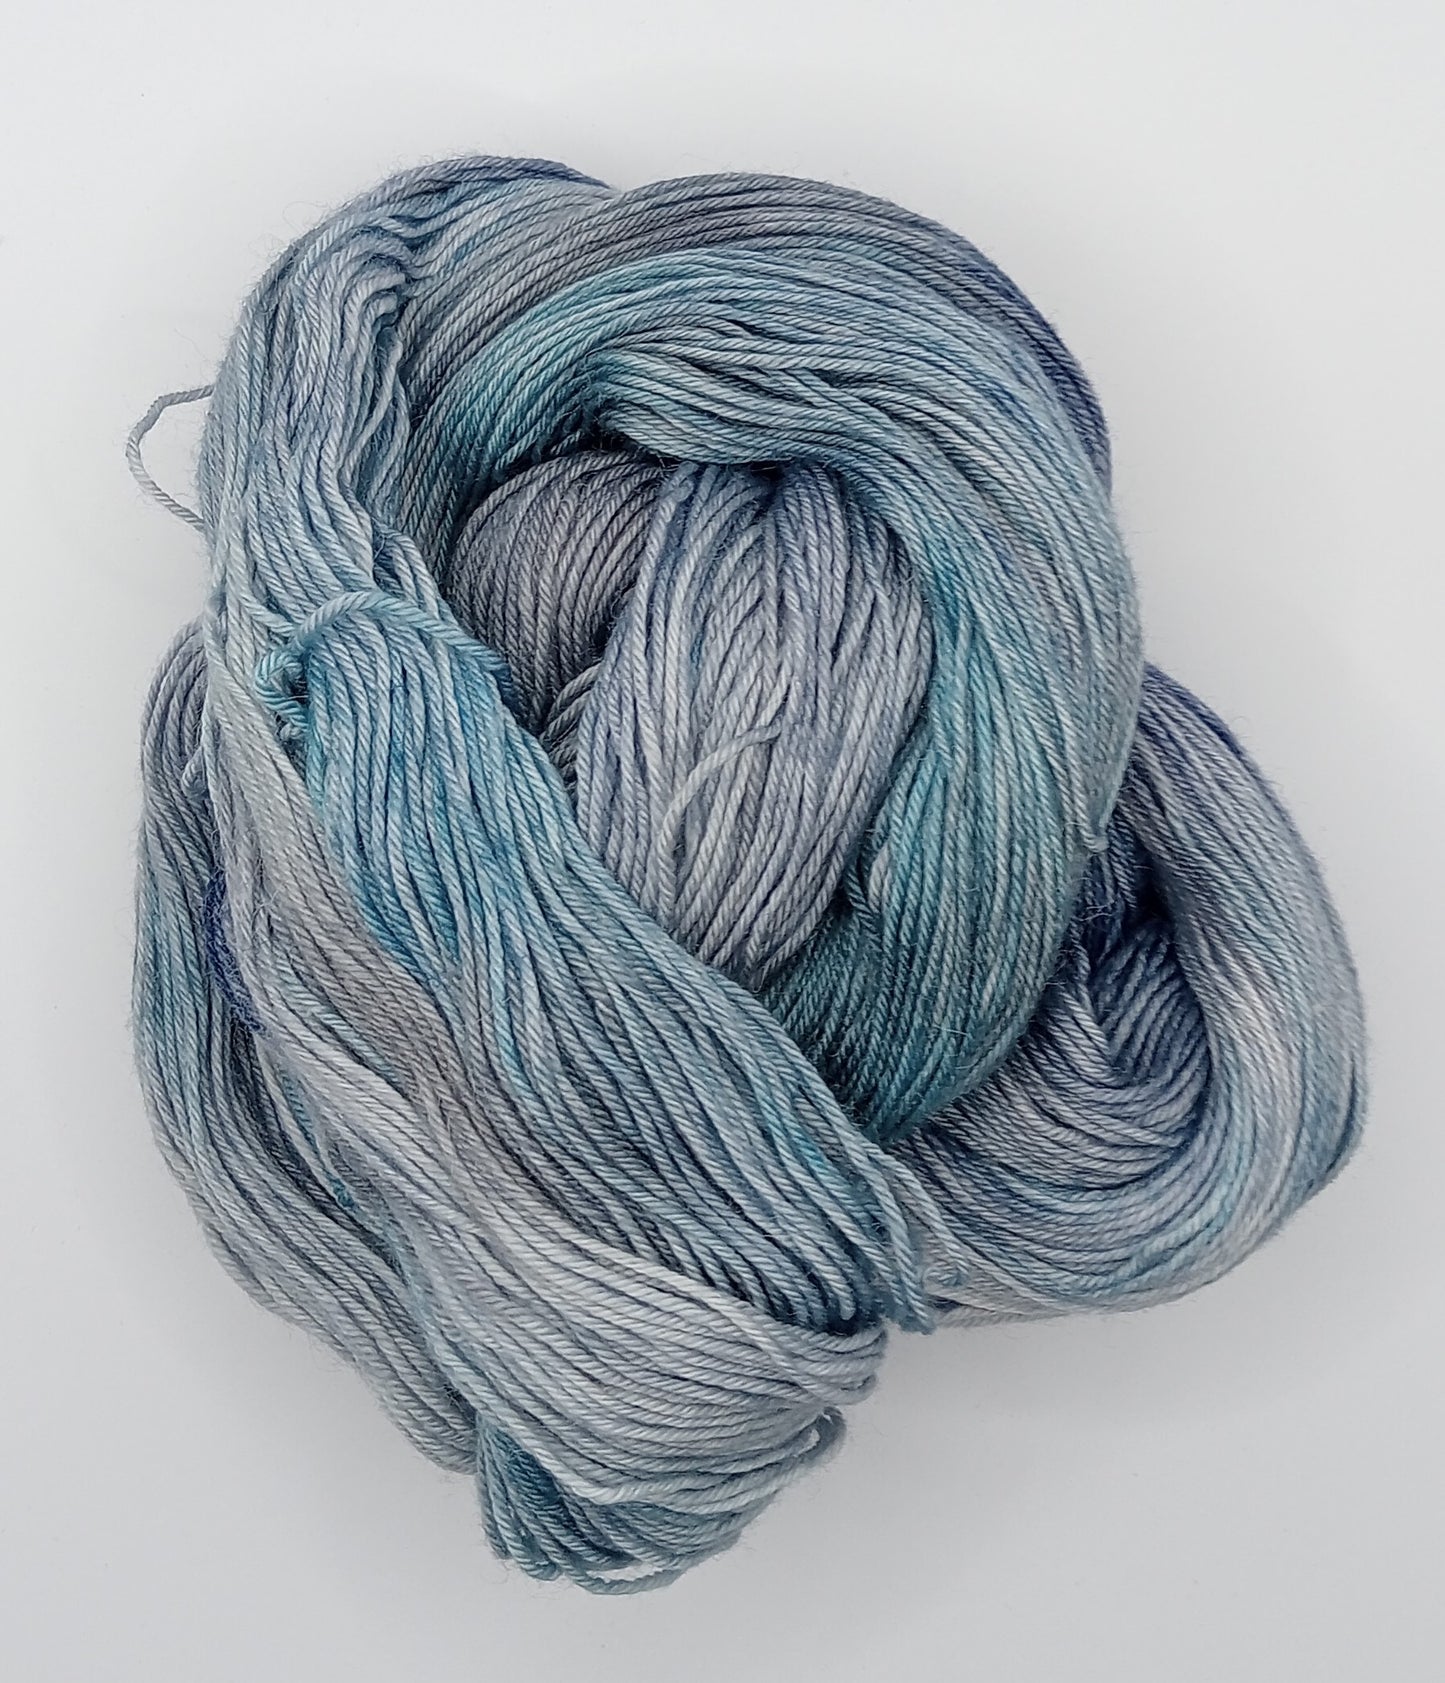 100G Merino/baby Alpaca/Silk hand dyed Yarn 4 Ply- "Albacore"